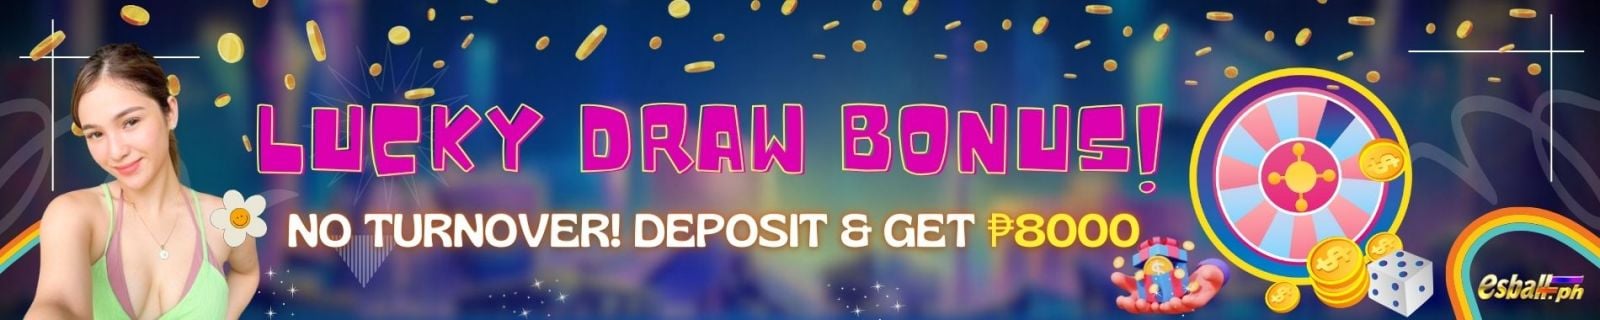 NO Turnover Bonus! Daily Deposit Lucky Draw ₱8000